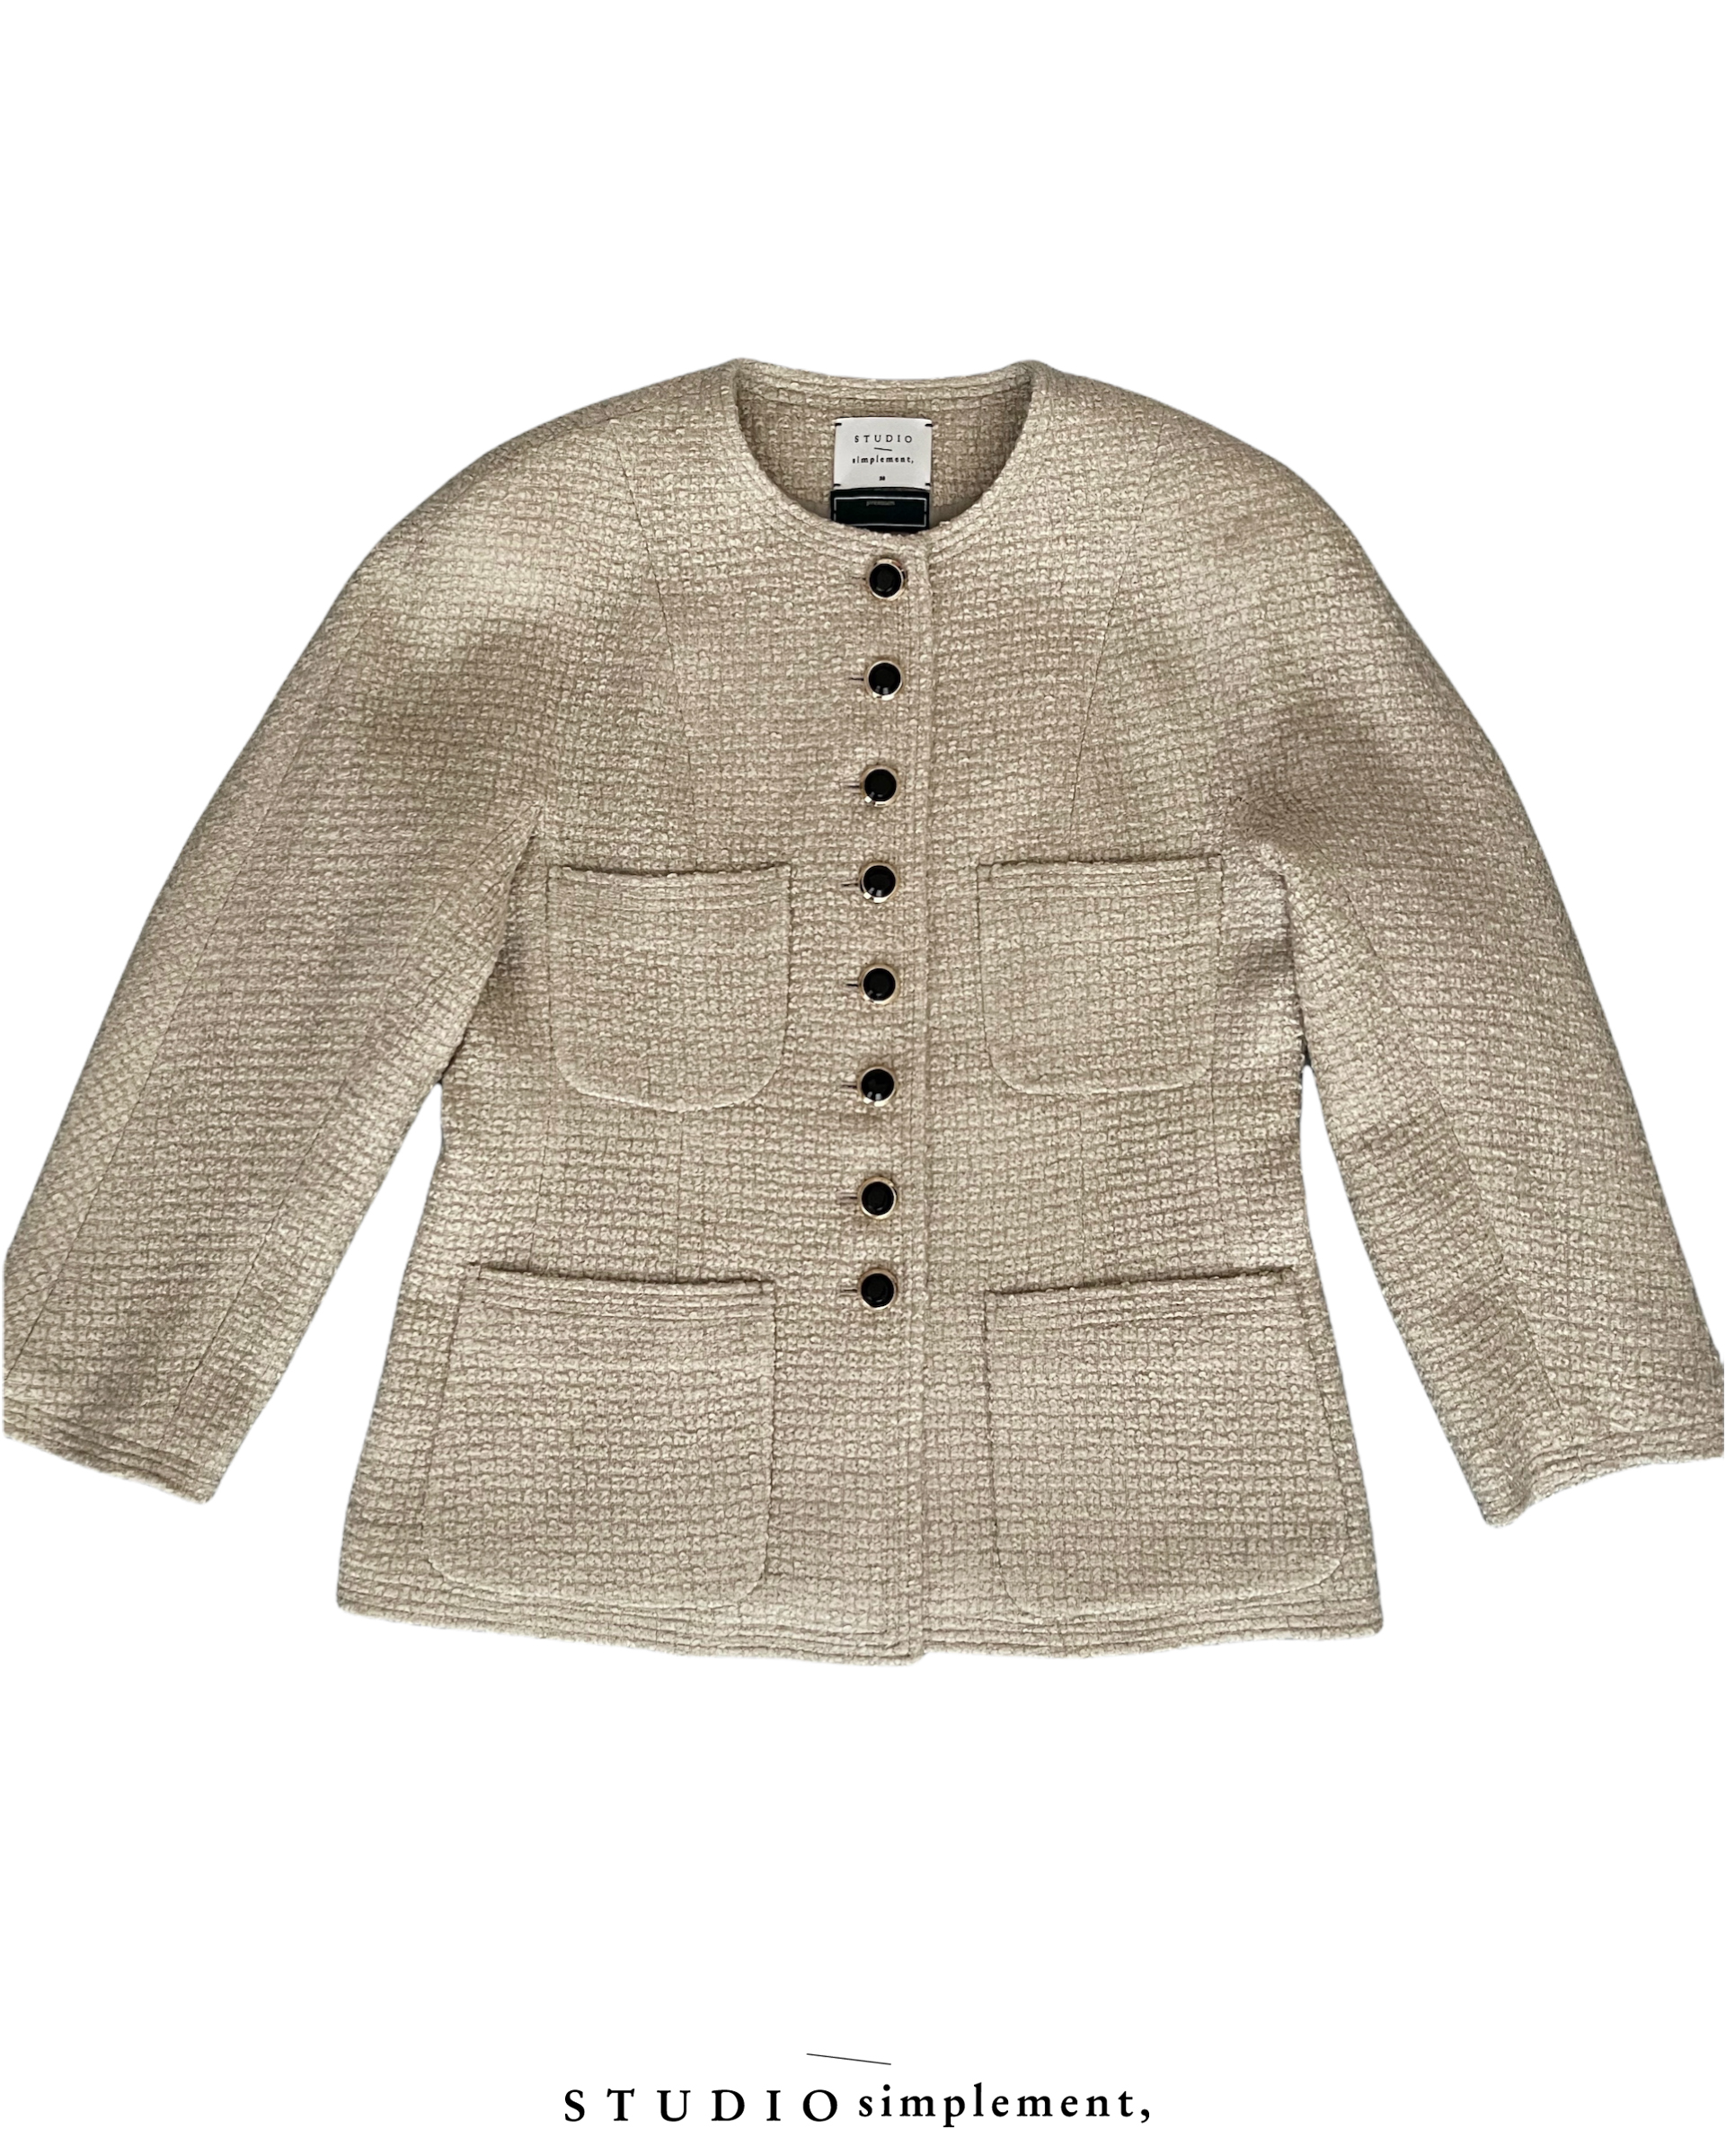 238 N.Dome Tweed Jacket (by FINETEX) - beige (Pre-order)